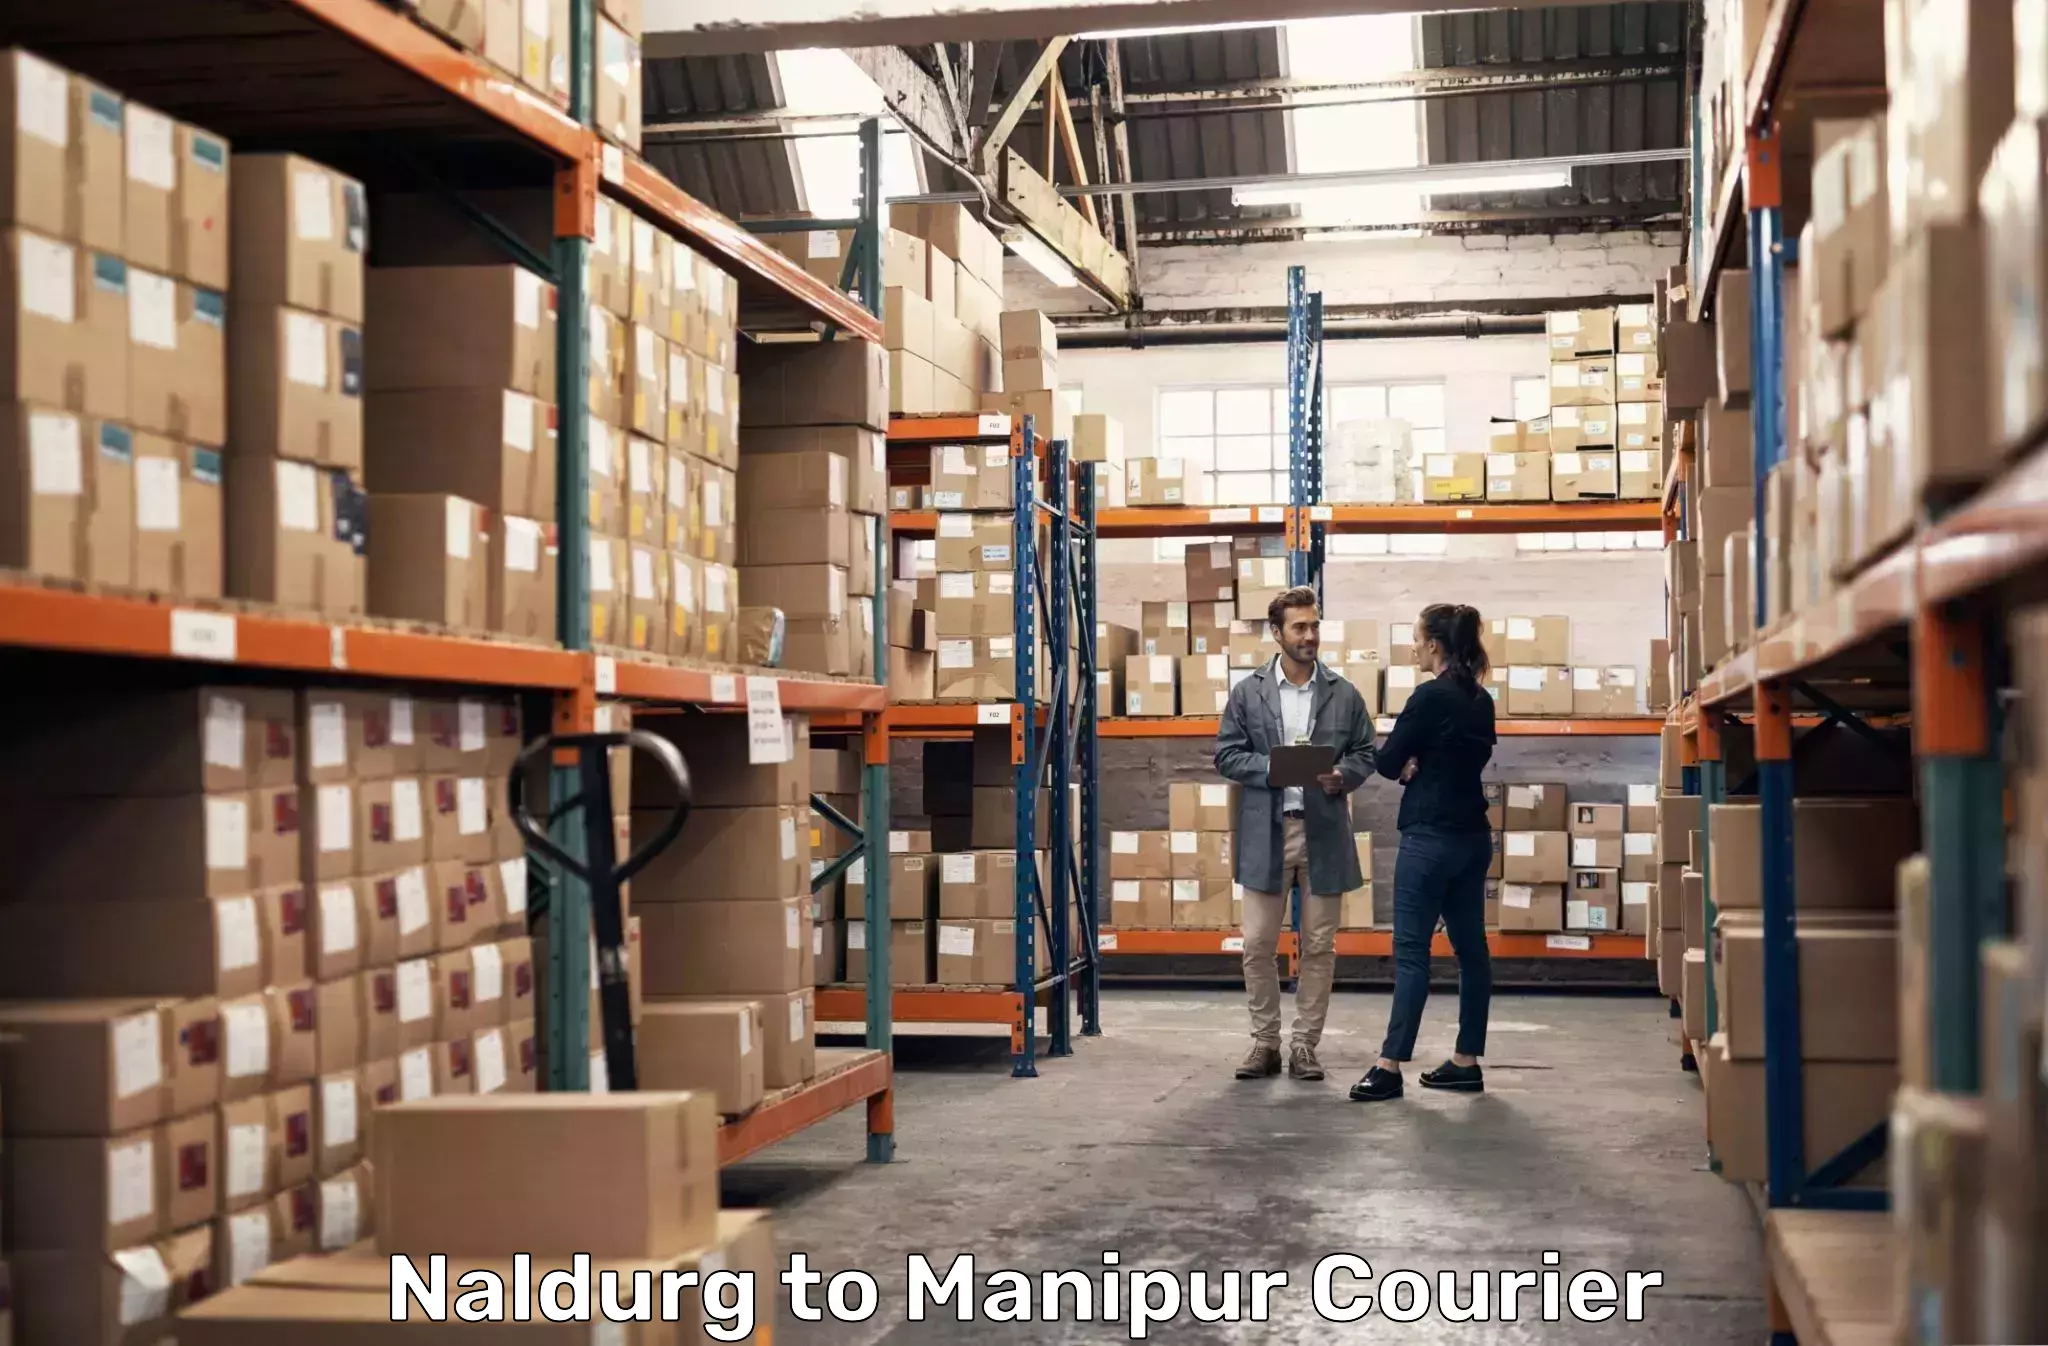 Advanced courier platforms in Naldurg to Manipur